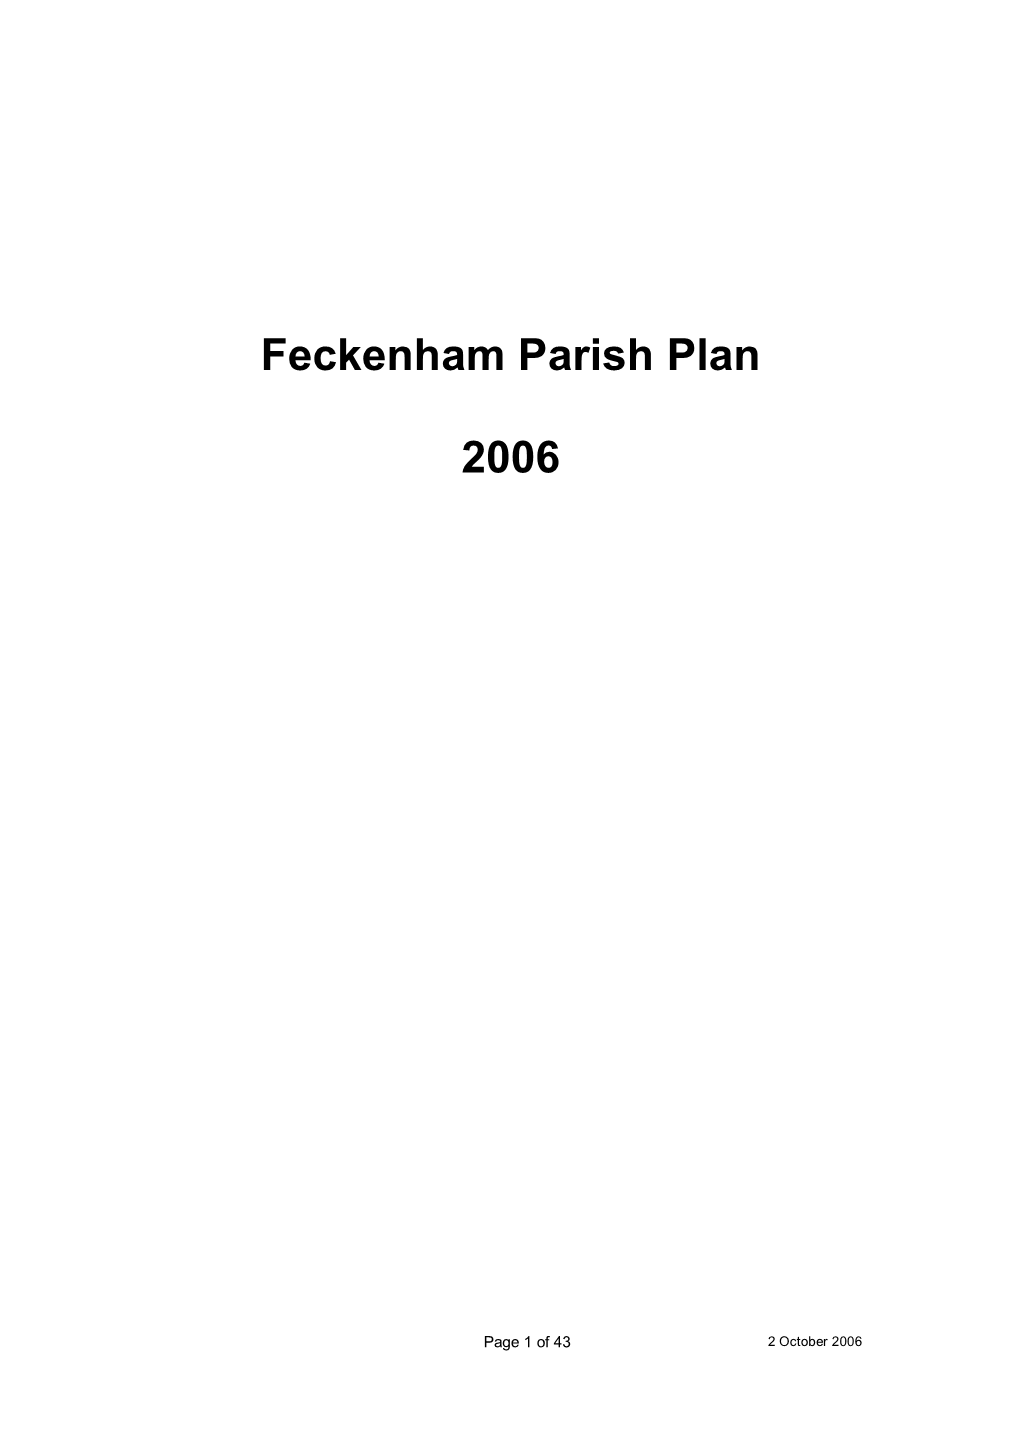 Feckenham Parish Plan 2006